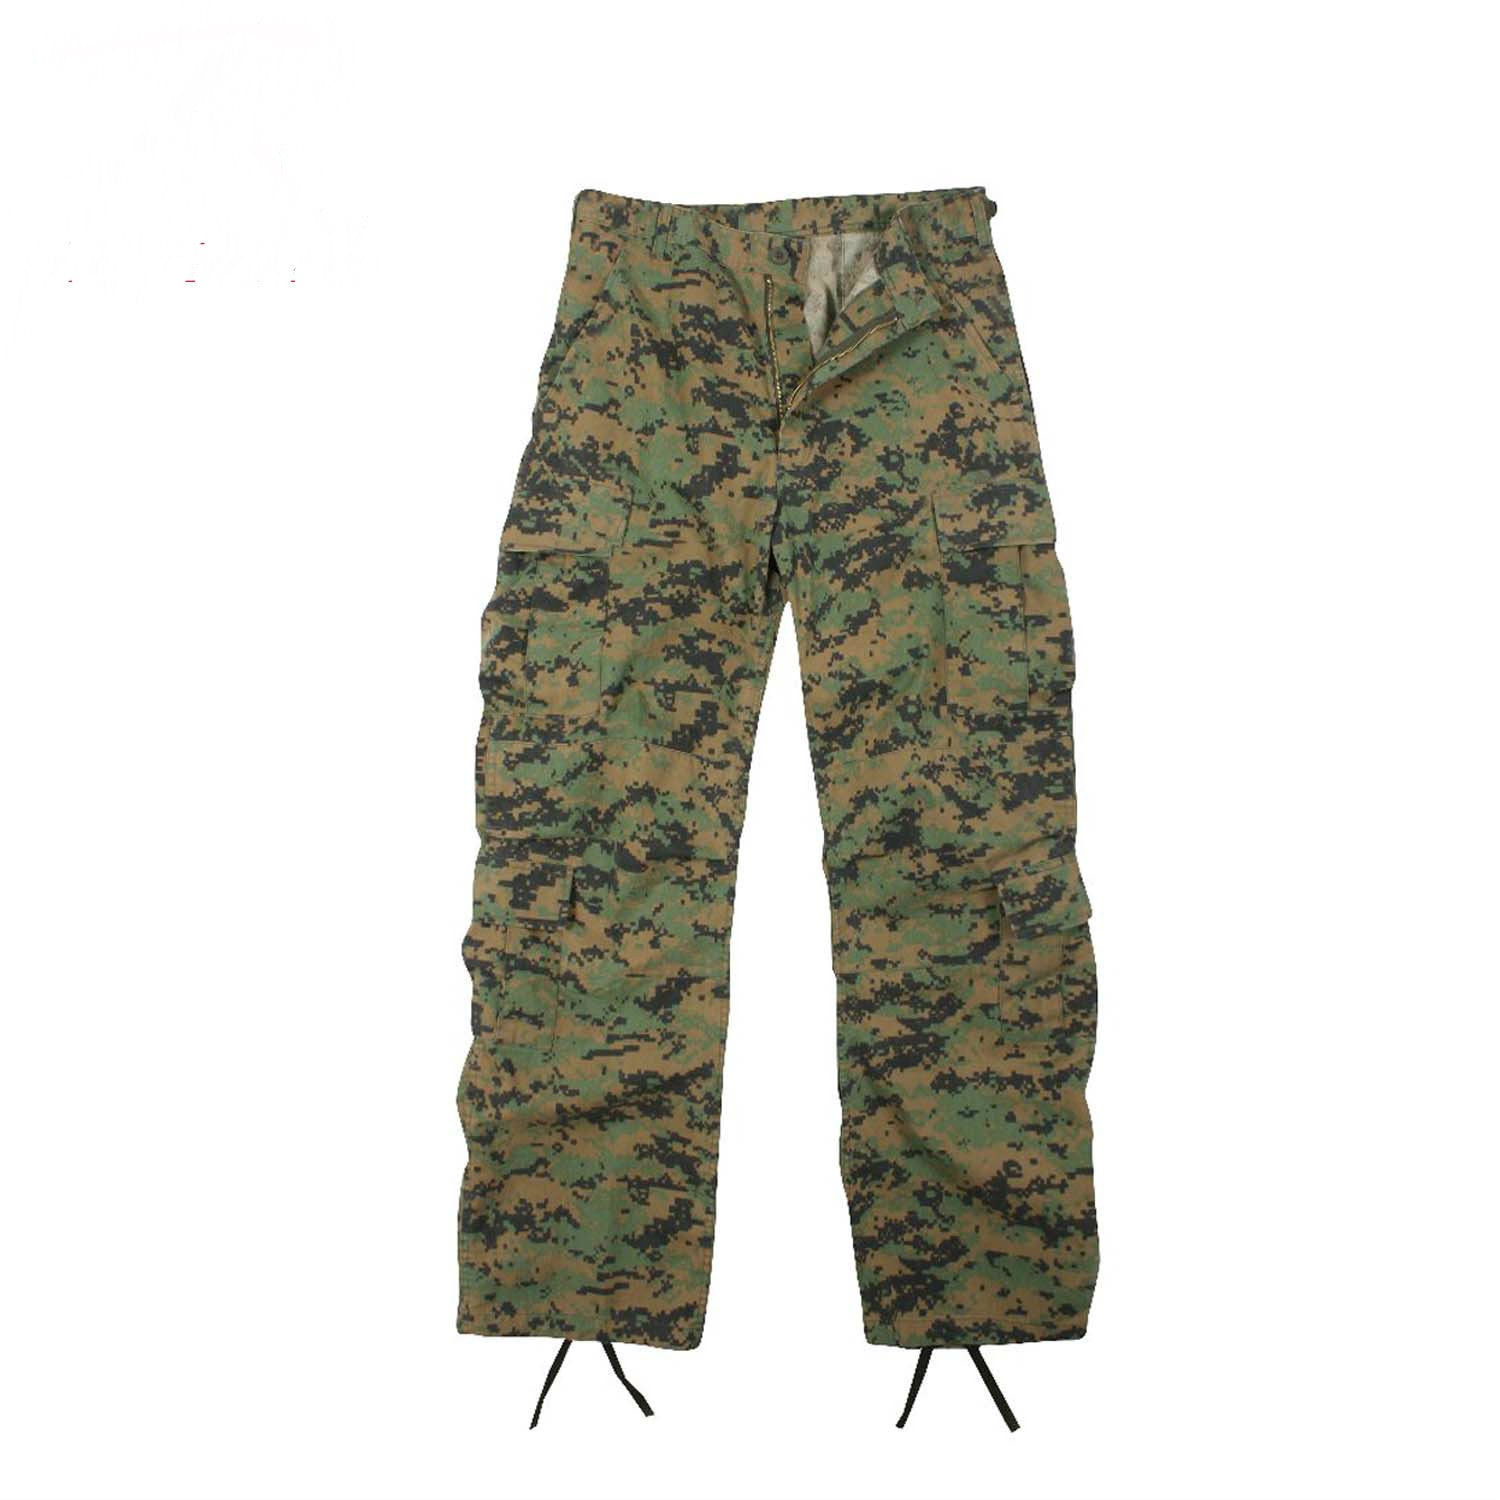 Shop Vintage Paratrooper Desert Camo Fatigue Pants - Fatigues Army Navy Gear